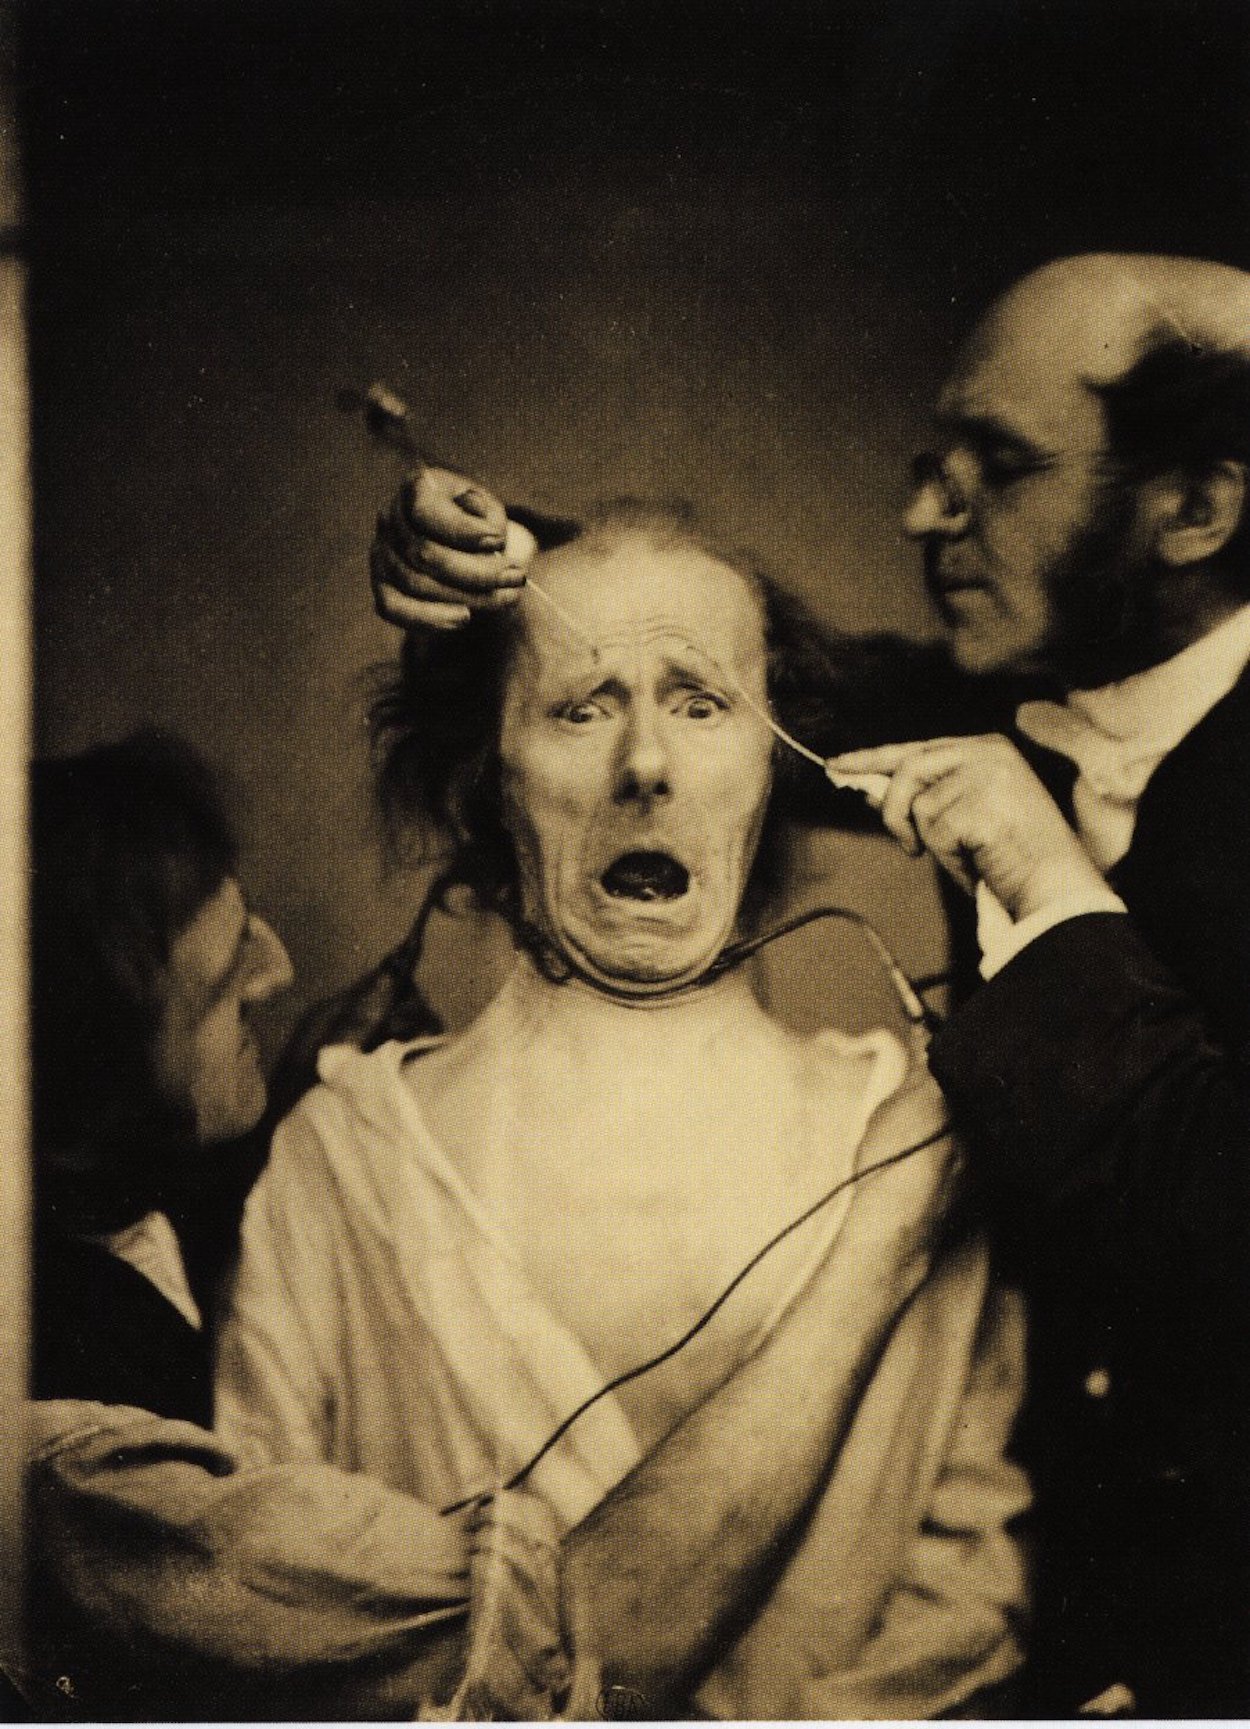 Duchenne y su asistente provocan una expresión de miedo usando la estimulación eléctrica by Paul Nadar - c. 1862 Wellcome Library